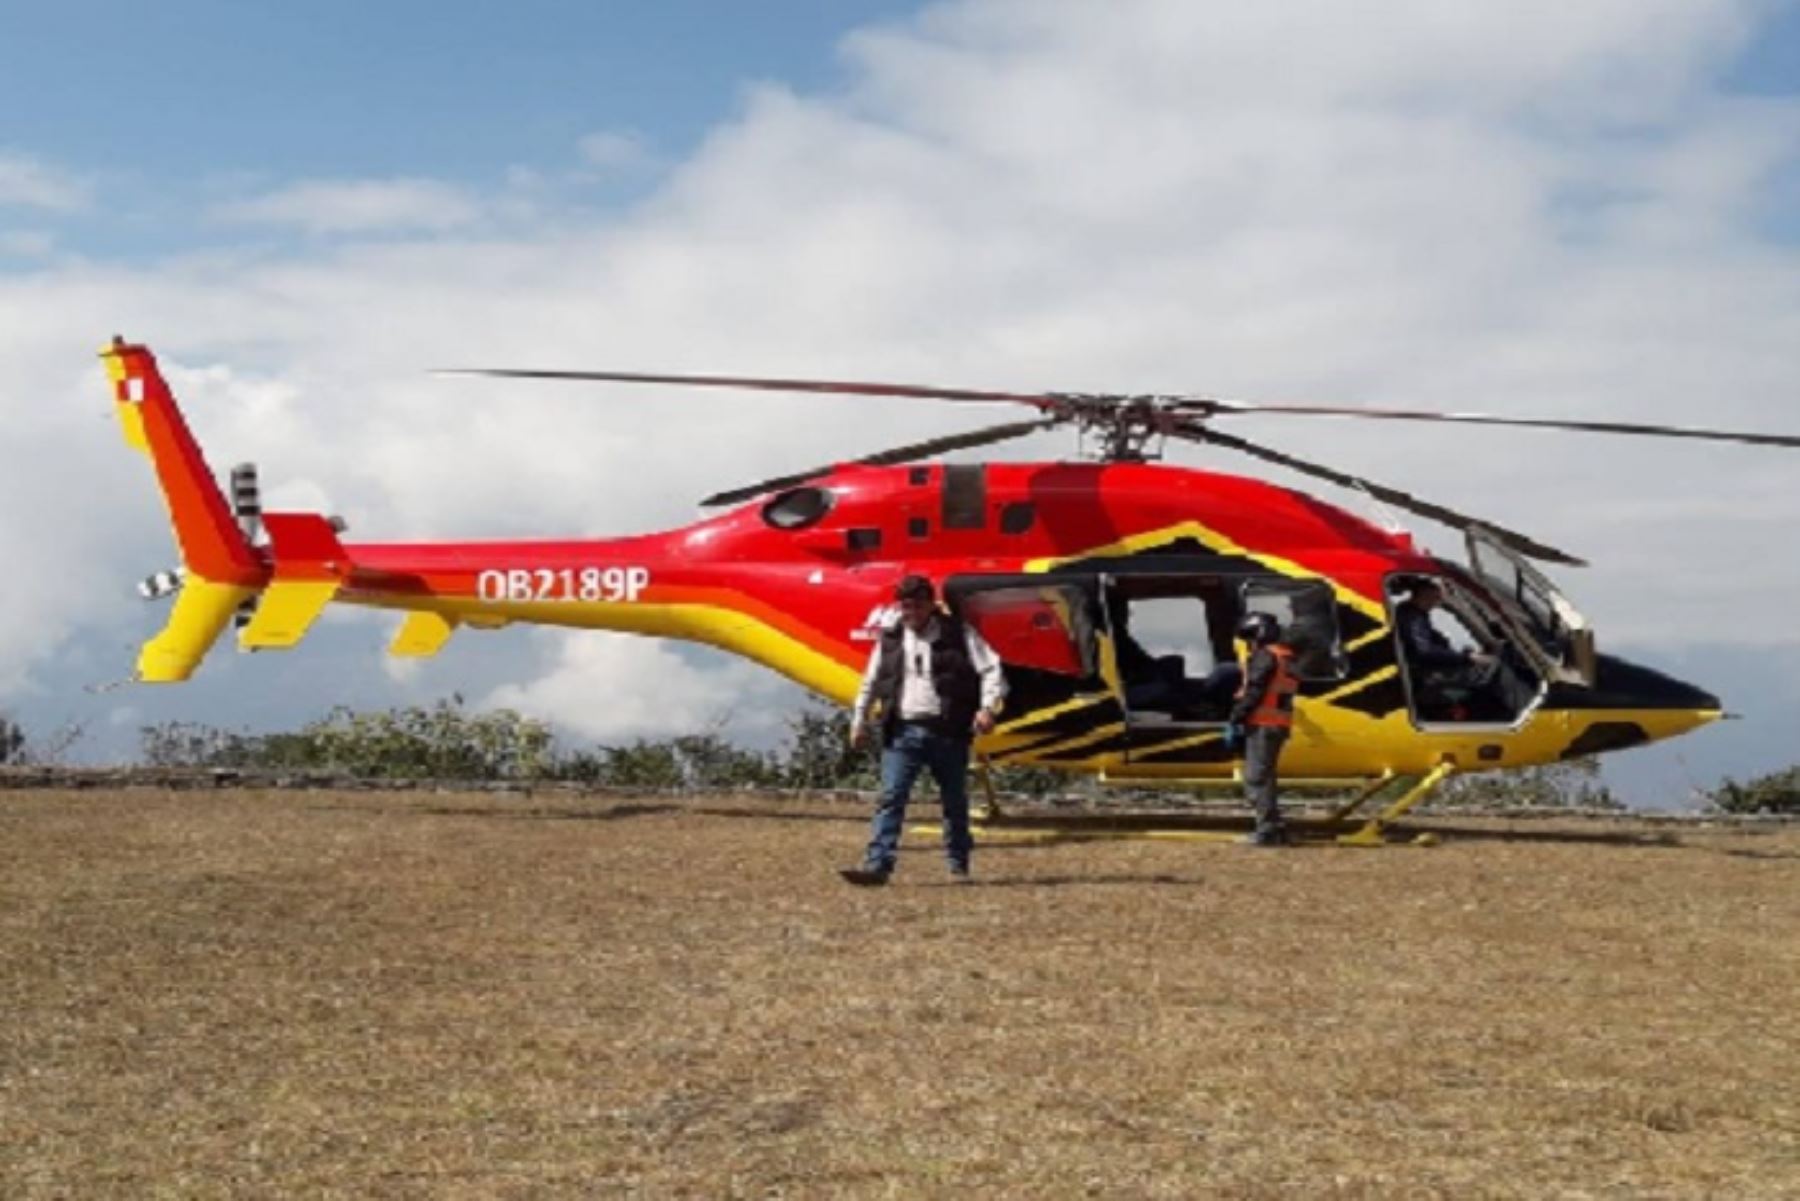 Helicóptero de la empresa Heliamerica aterrizó sin autorización en Choquequirao. ANDINA/Difusión